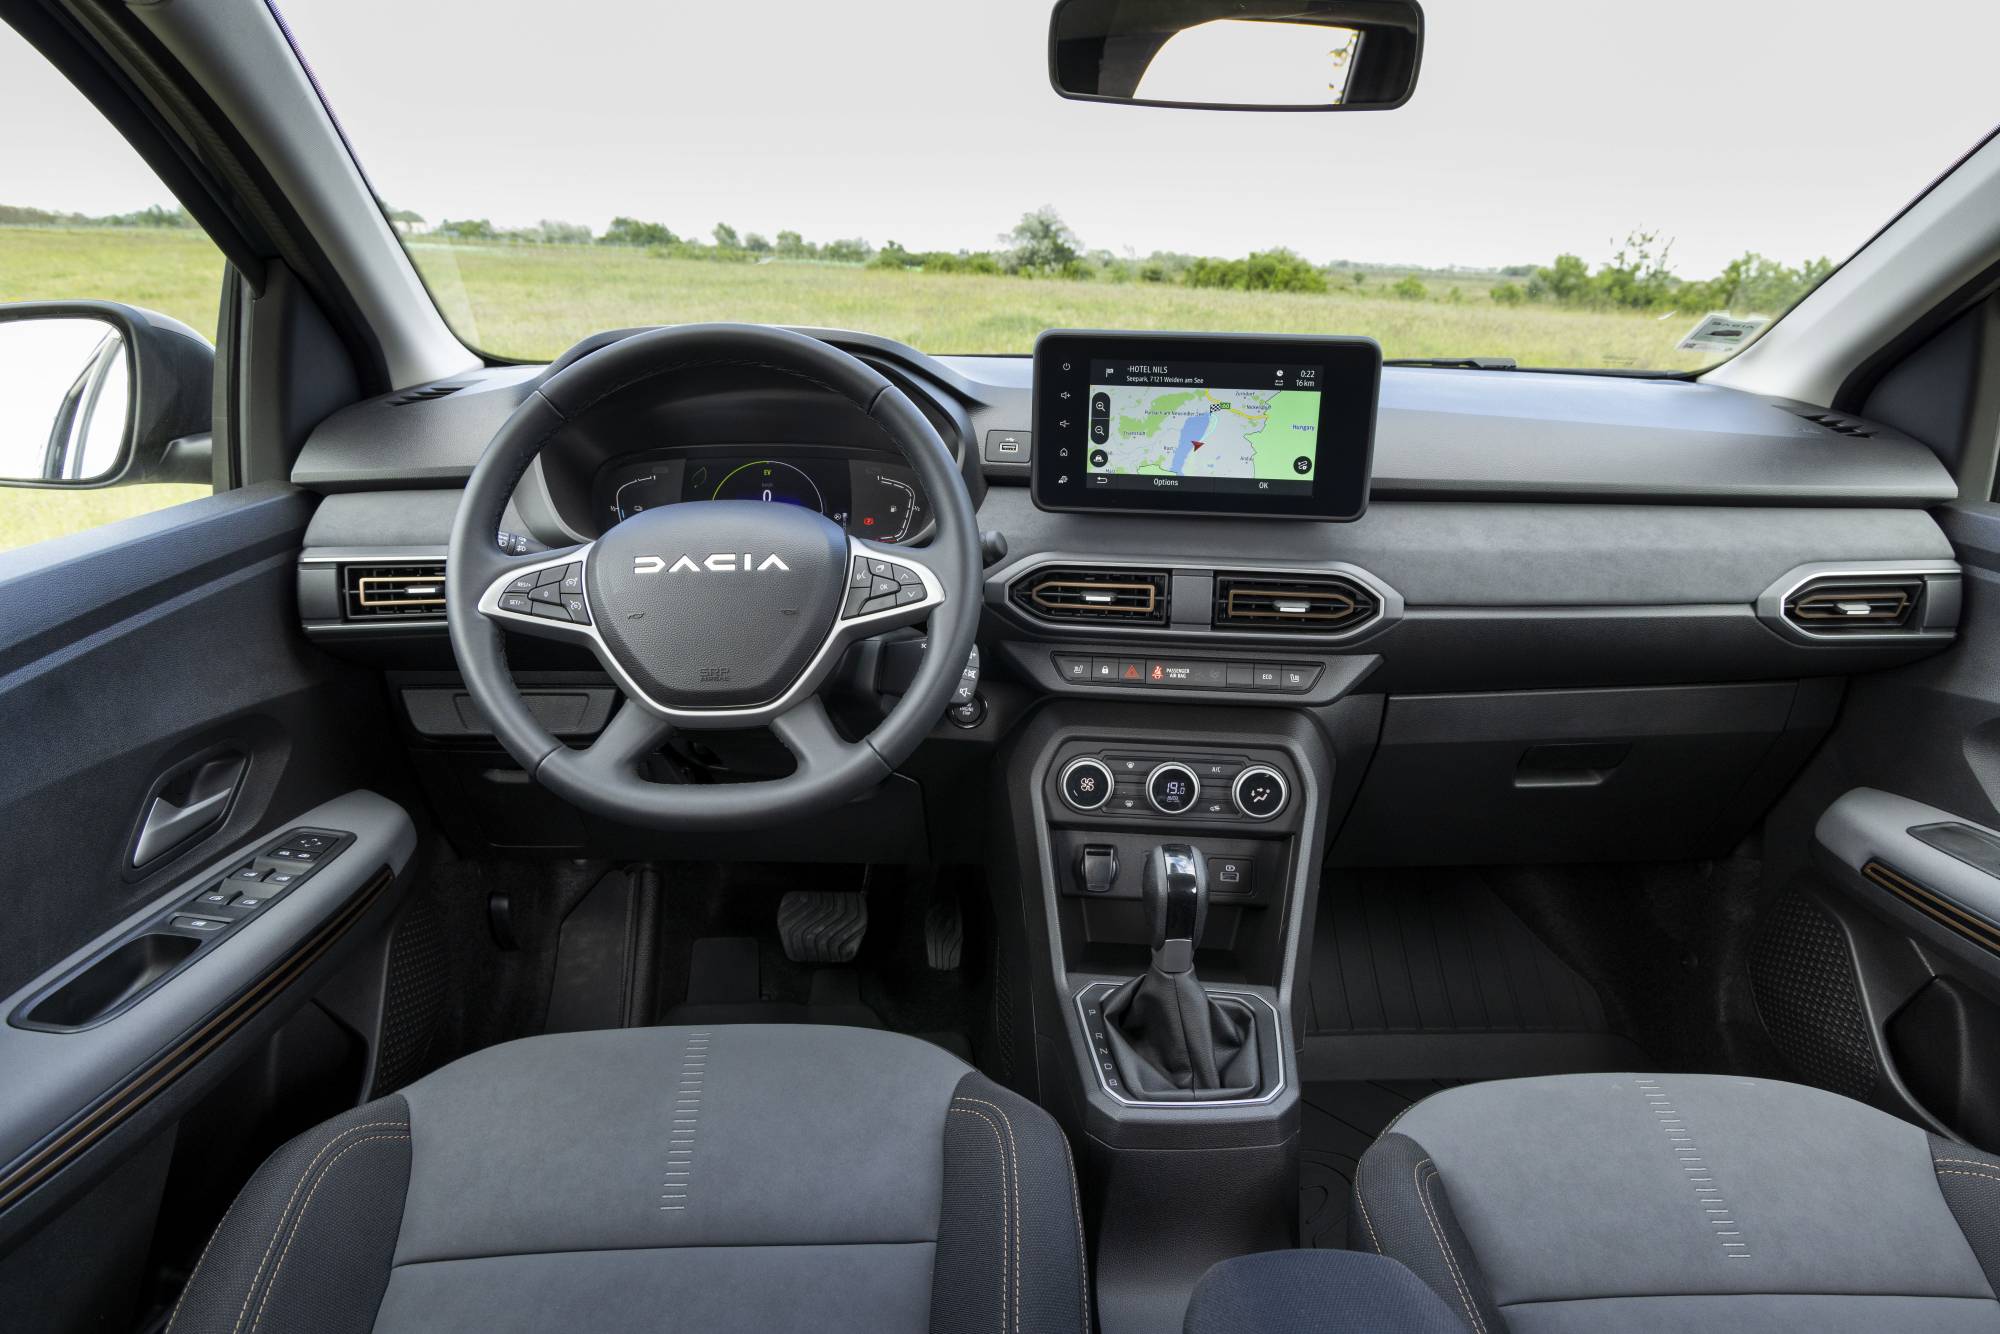 Οδηγούμε το Dacia Jogger LPG: Το Προσιτό και Οικονομικό 7θέσιο Αυτοκίνητο
